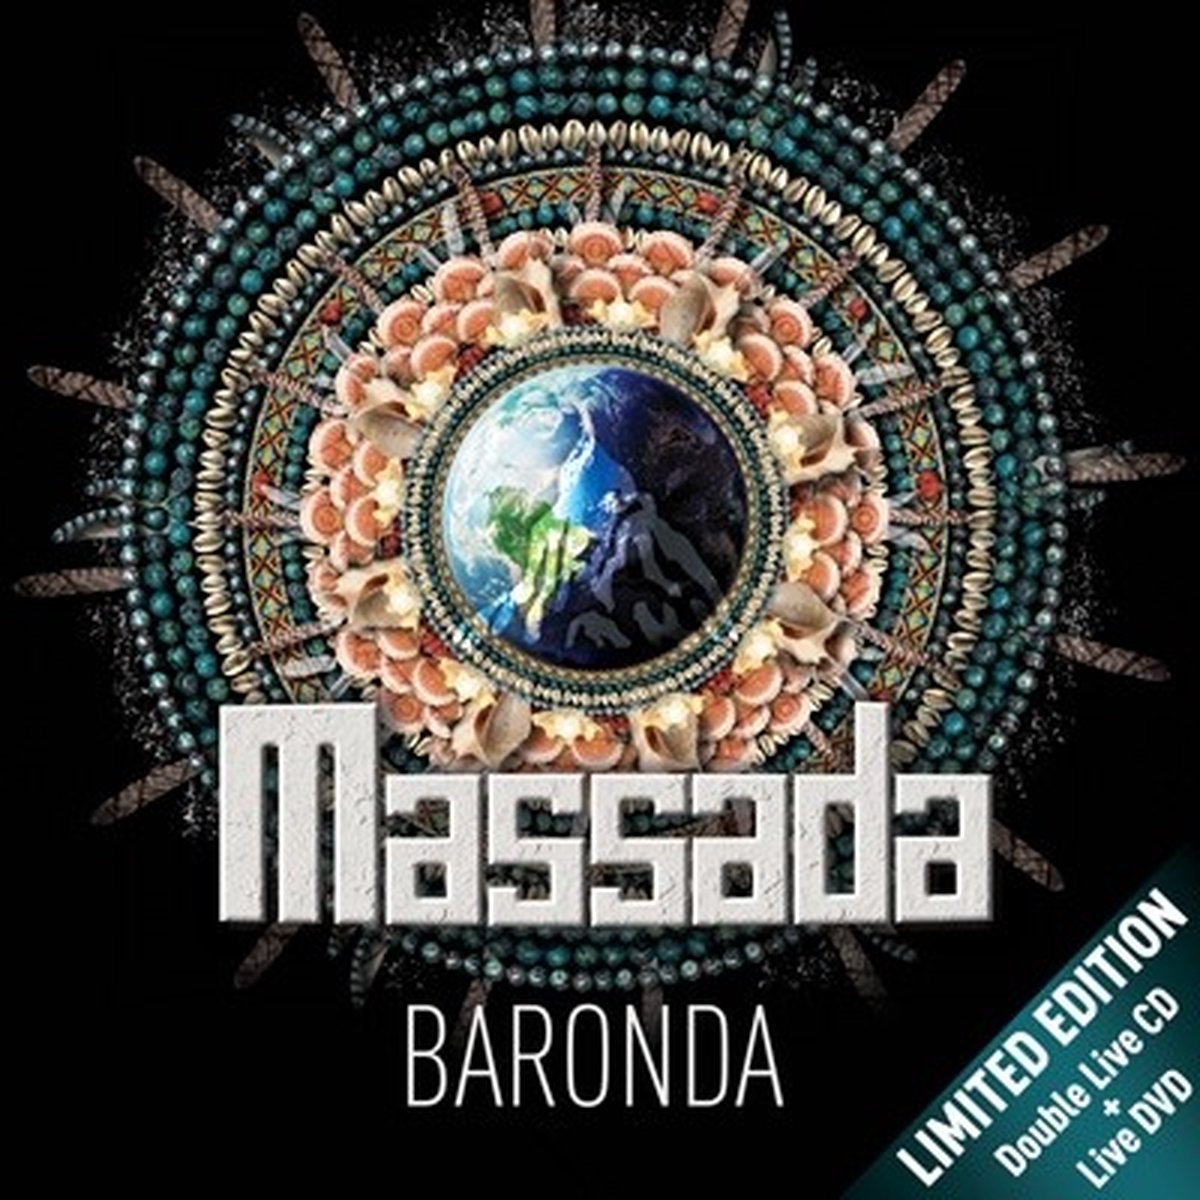 Massada Baronda 2018 verzoekje